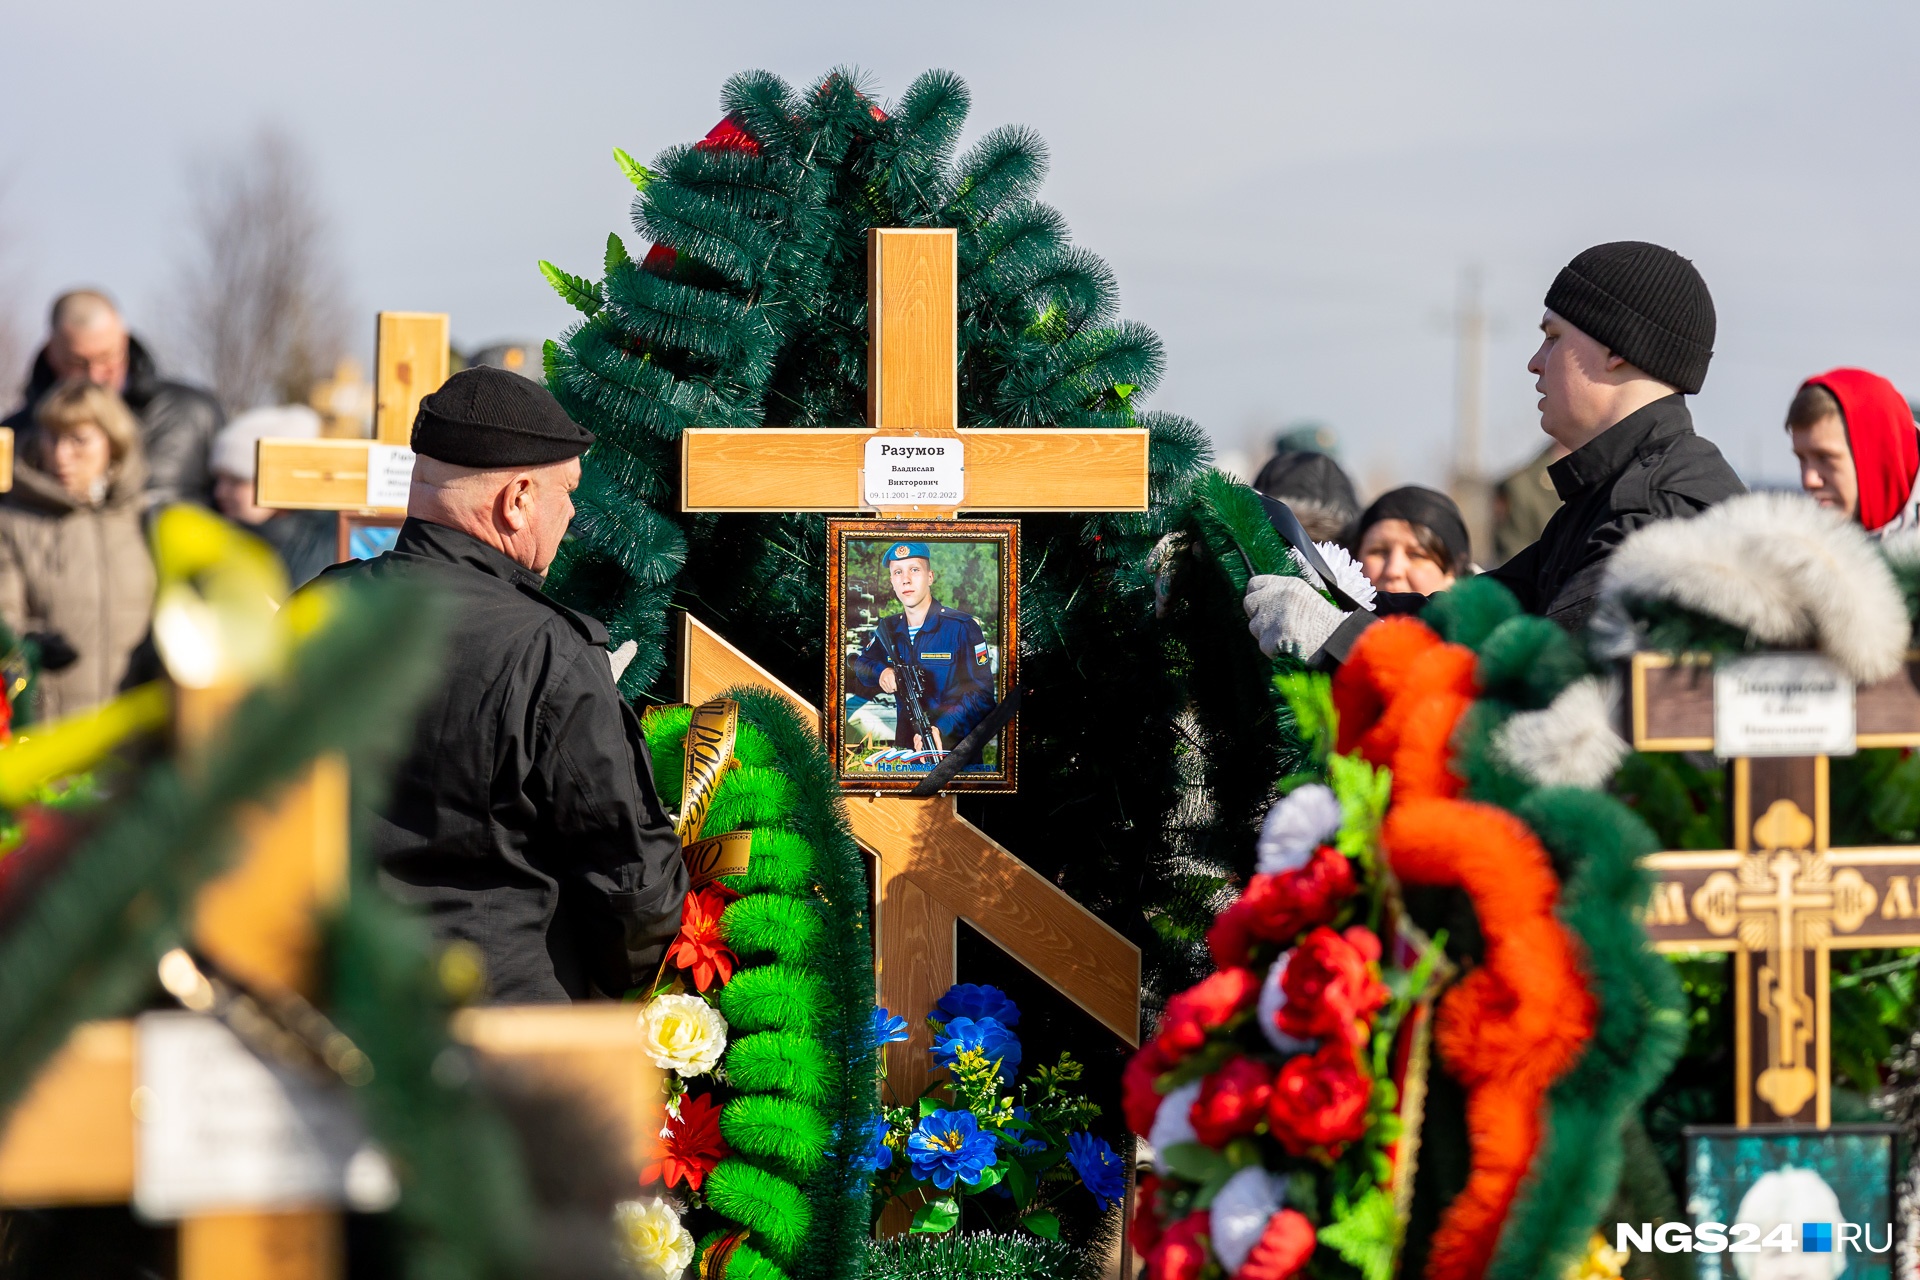 Видео прощания с погибшими. Прощание с погибшими на Украине. Похороны военнослужащего. Похороны солдат погибших в Украине 2022.